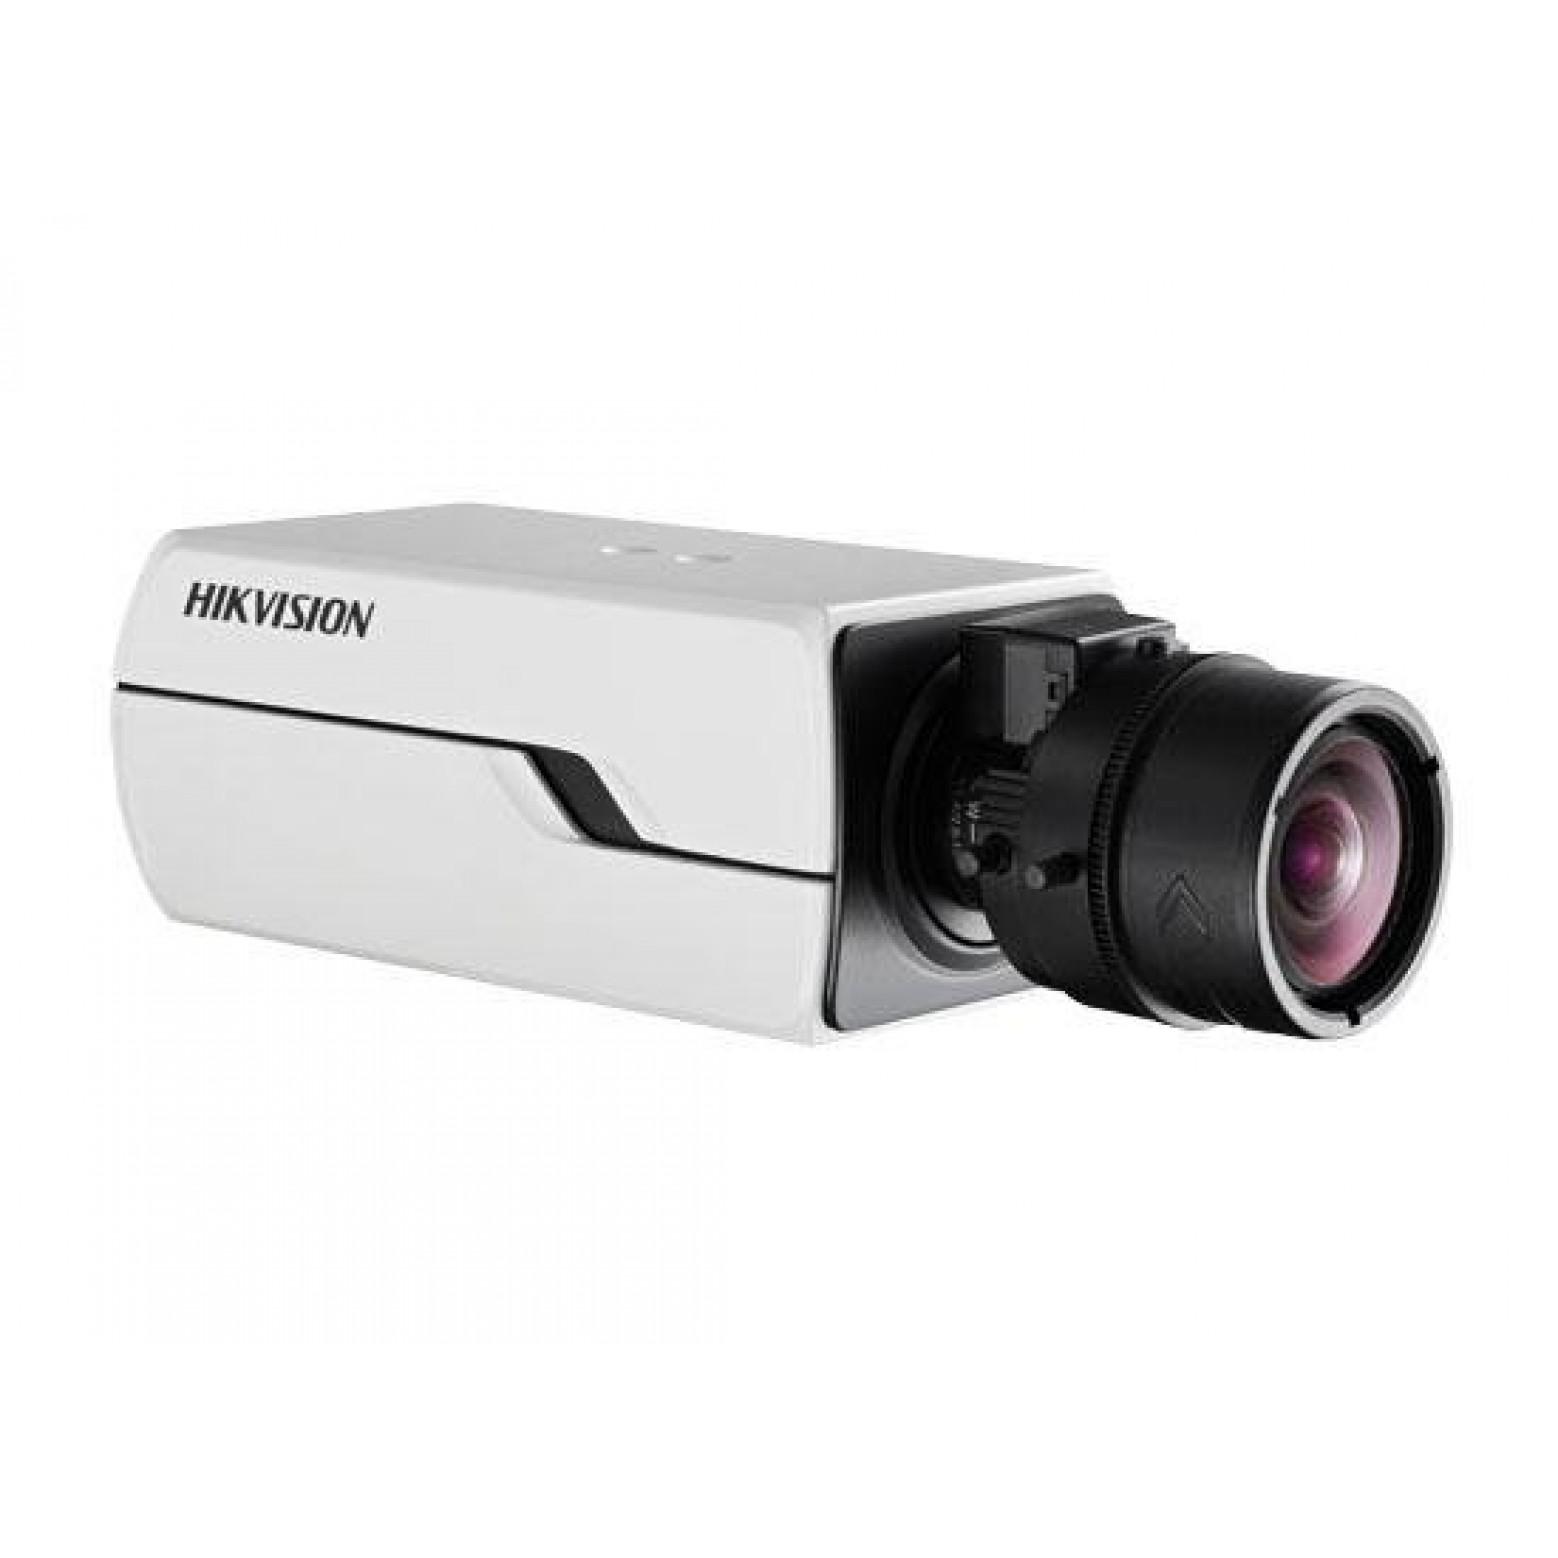 Hikvision DS-2CD4012F-A 1,3 megapixel slimme ip-camera